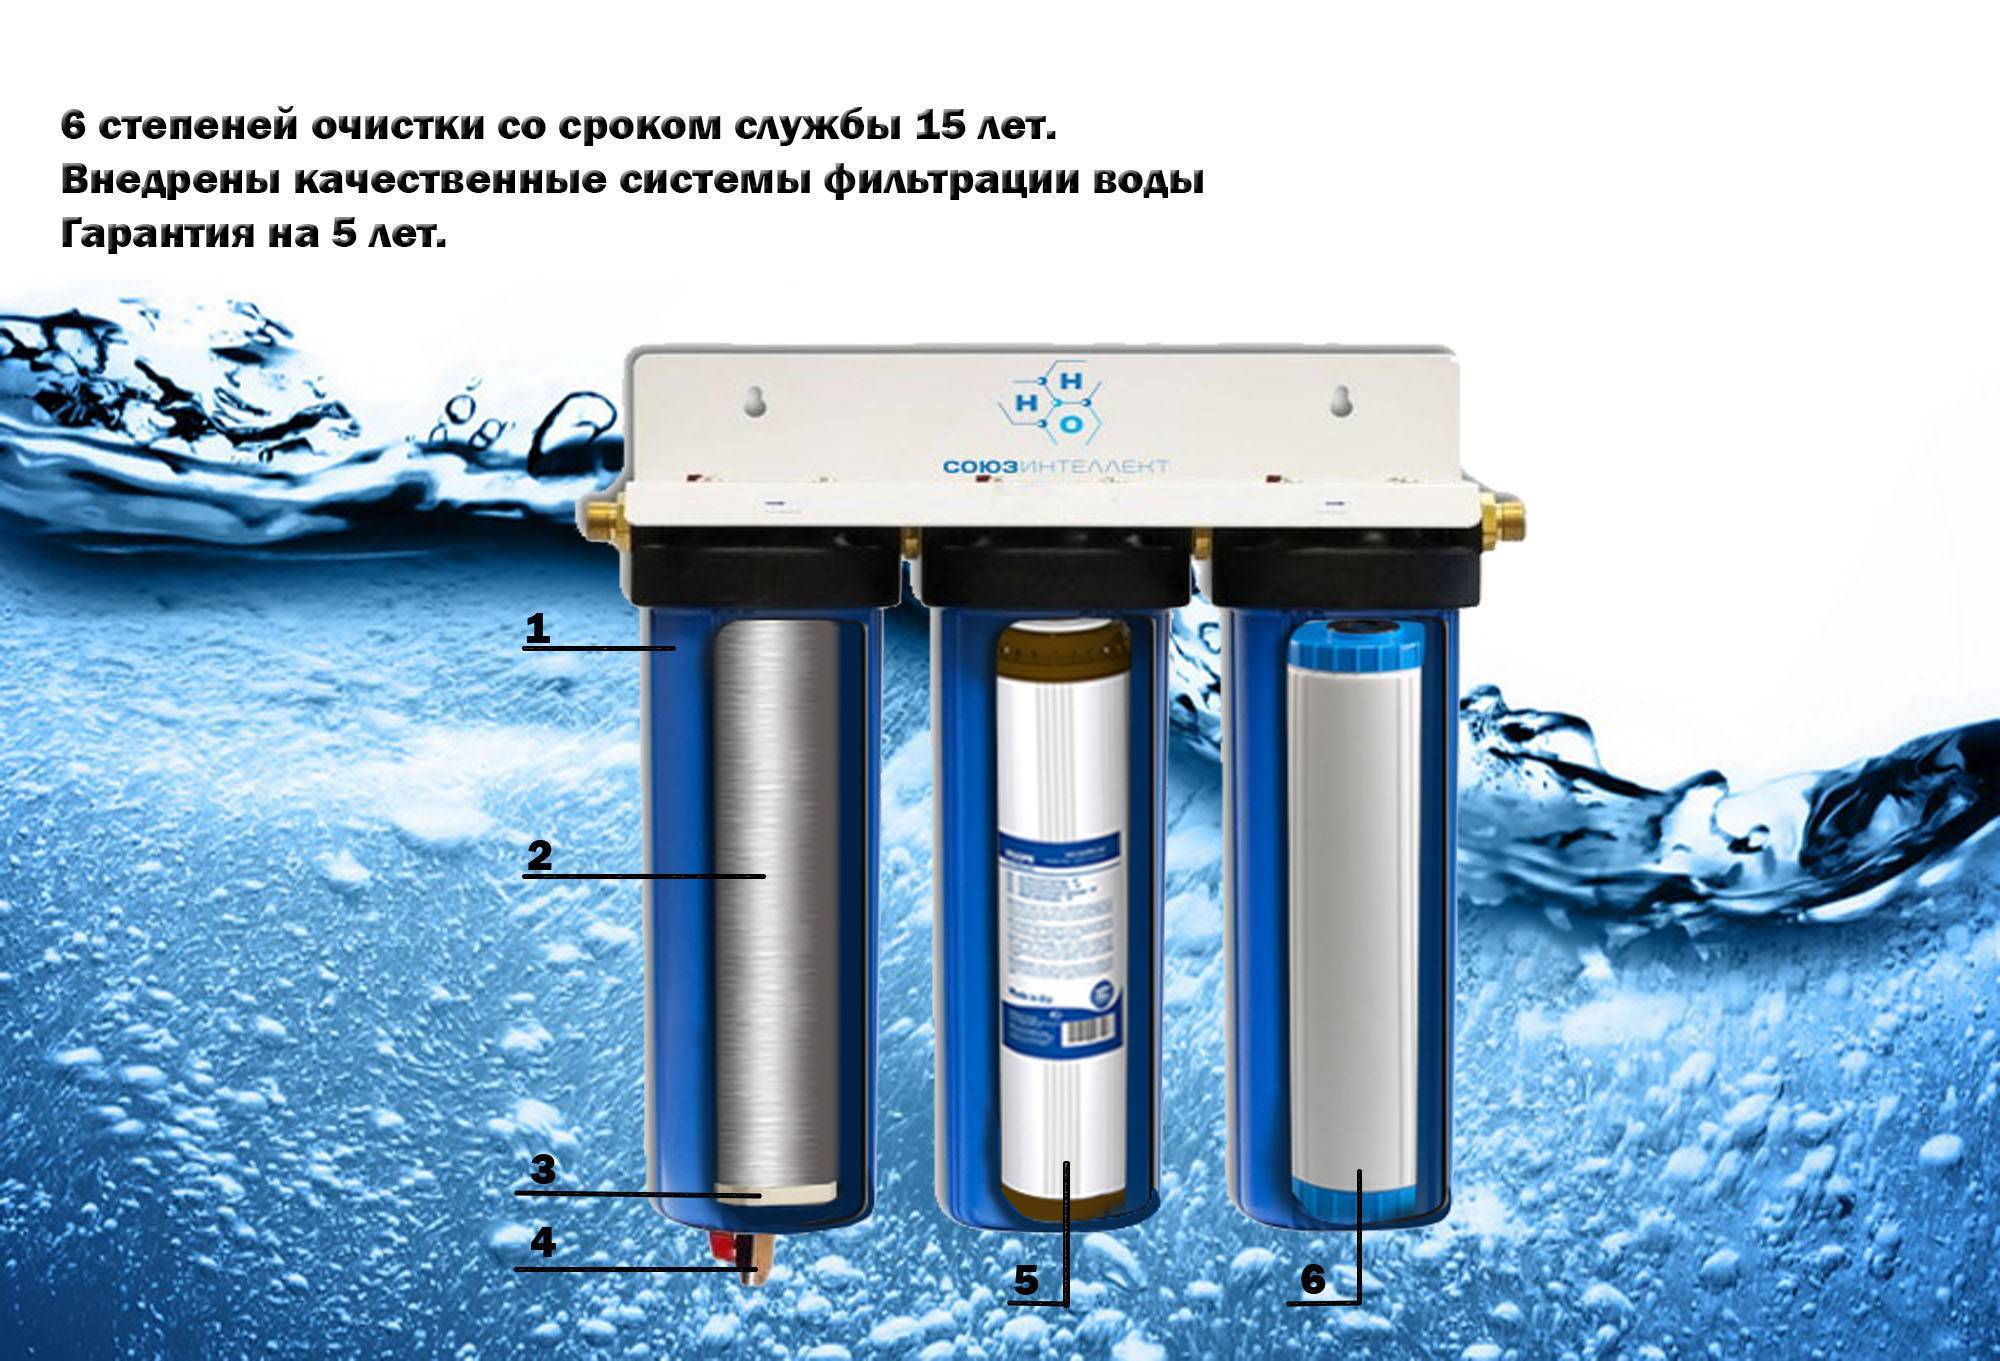 Механически очищенная вода. Аурус фильтр для воды. Титановый фильтр для очистки воды. Титановые фильтры для очистки воды из скважины. Степени очистки воды фильтрами.